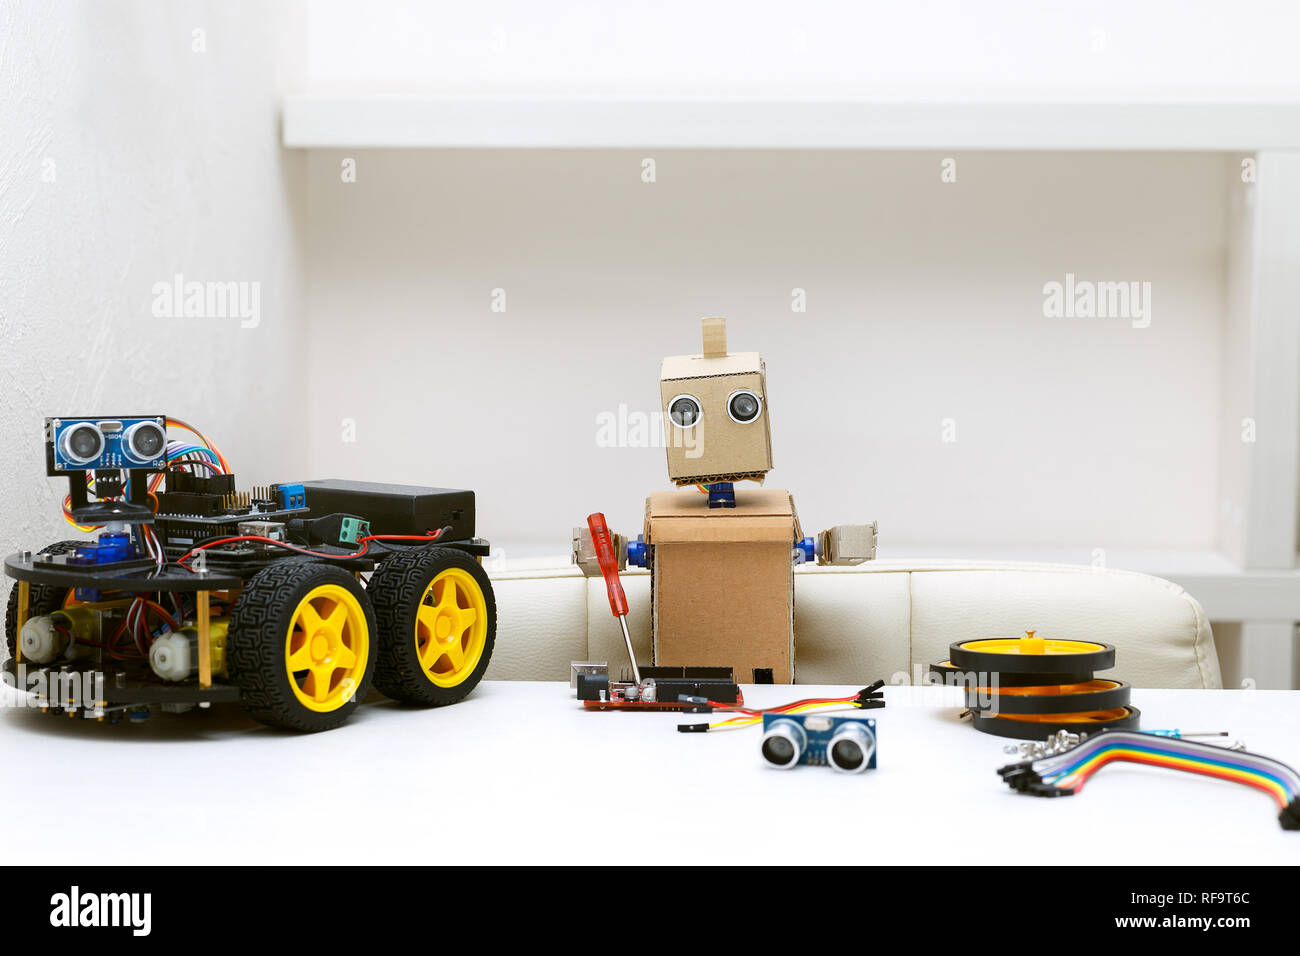 Figura Tragic Toys - Robot Boy — Camden Shop